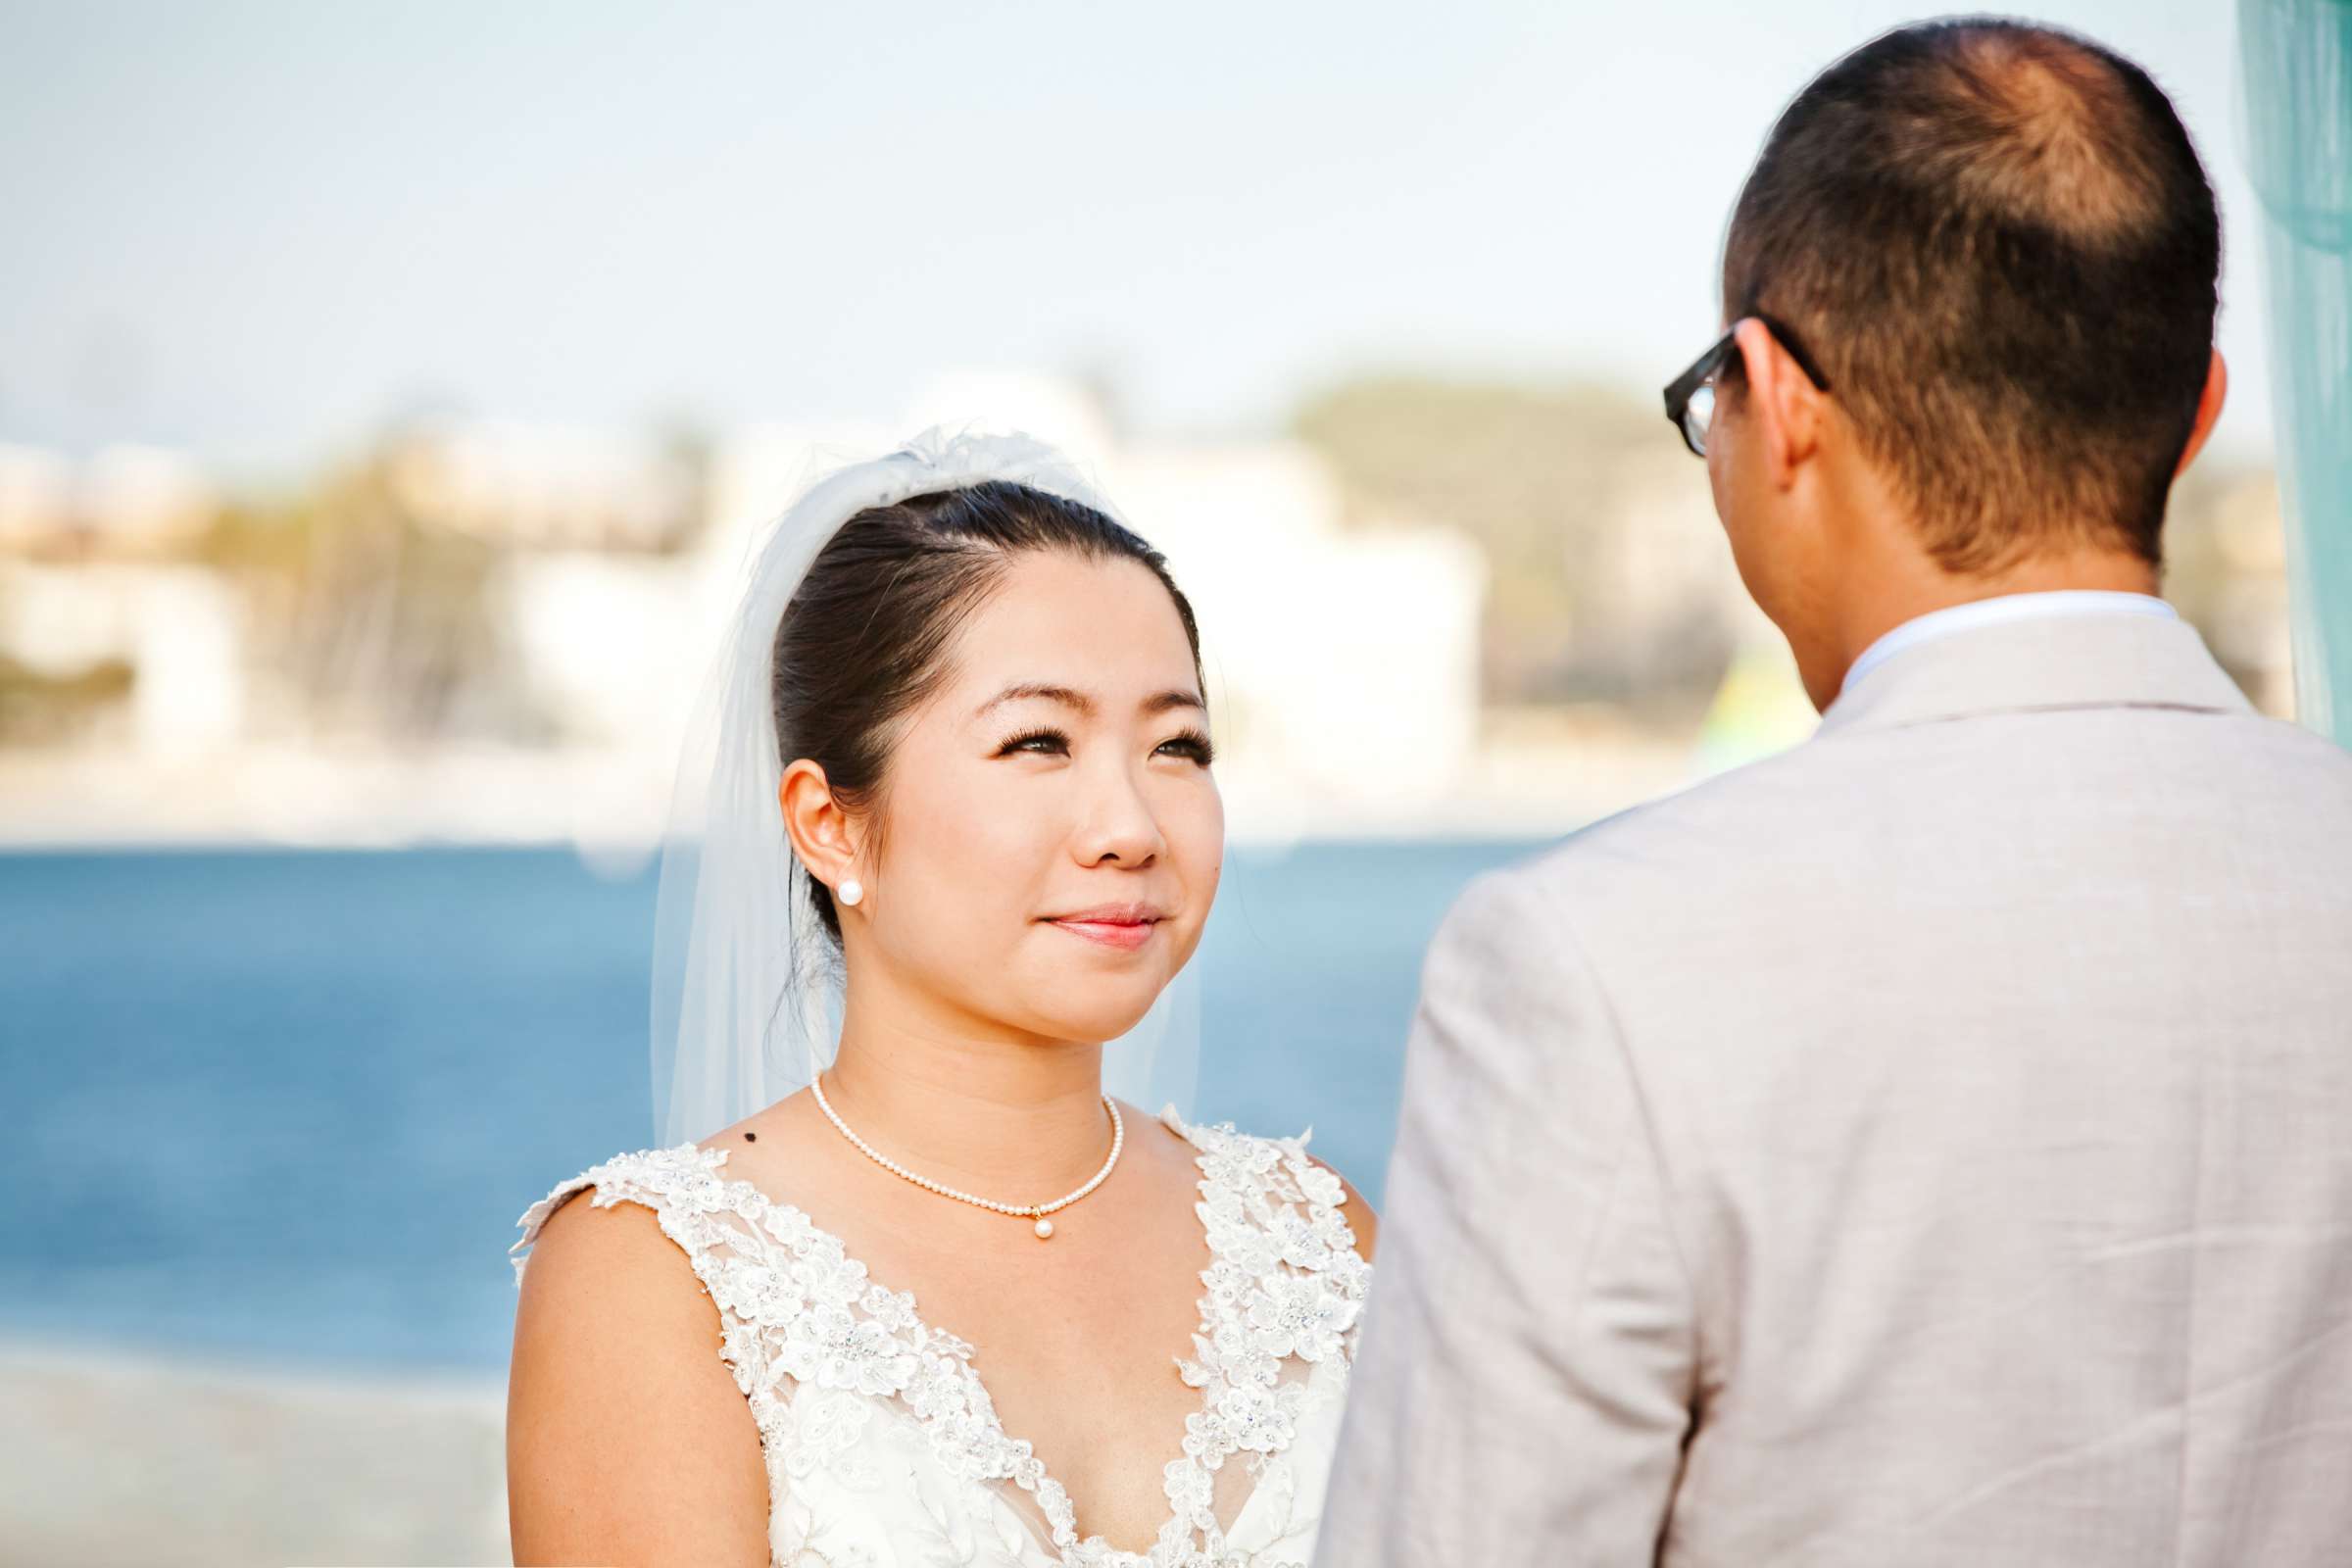 Catamaran Resort Wedding, Yuko and James Wedding Photo #347394 by True Photography